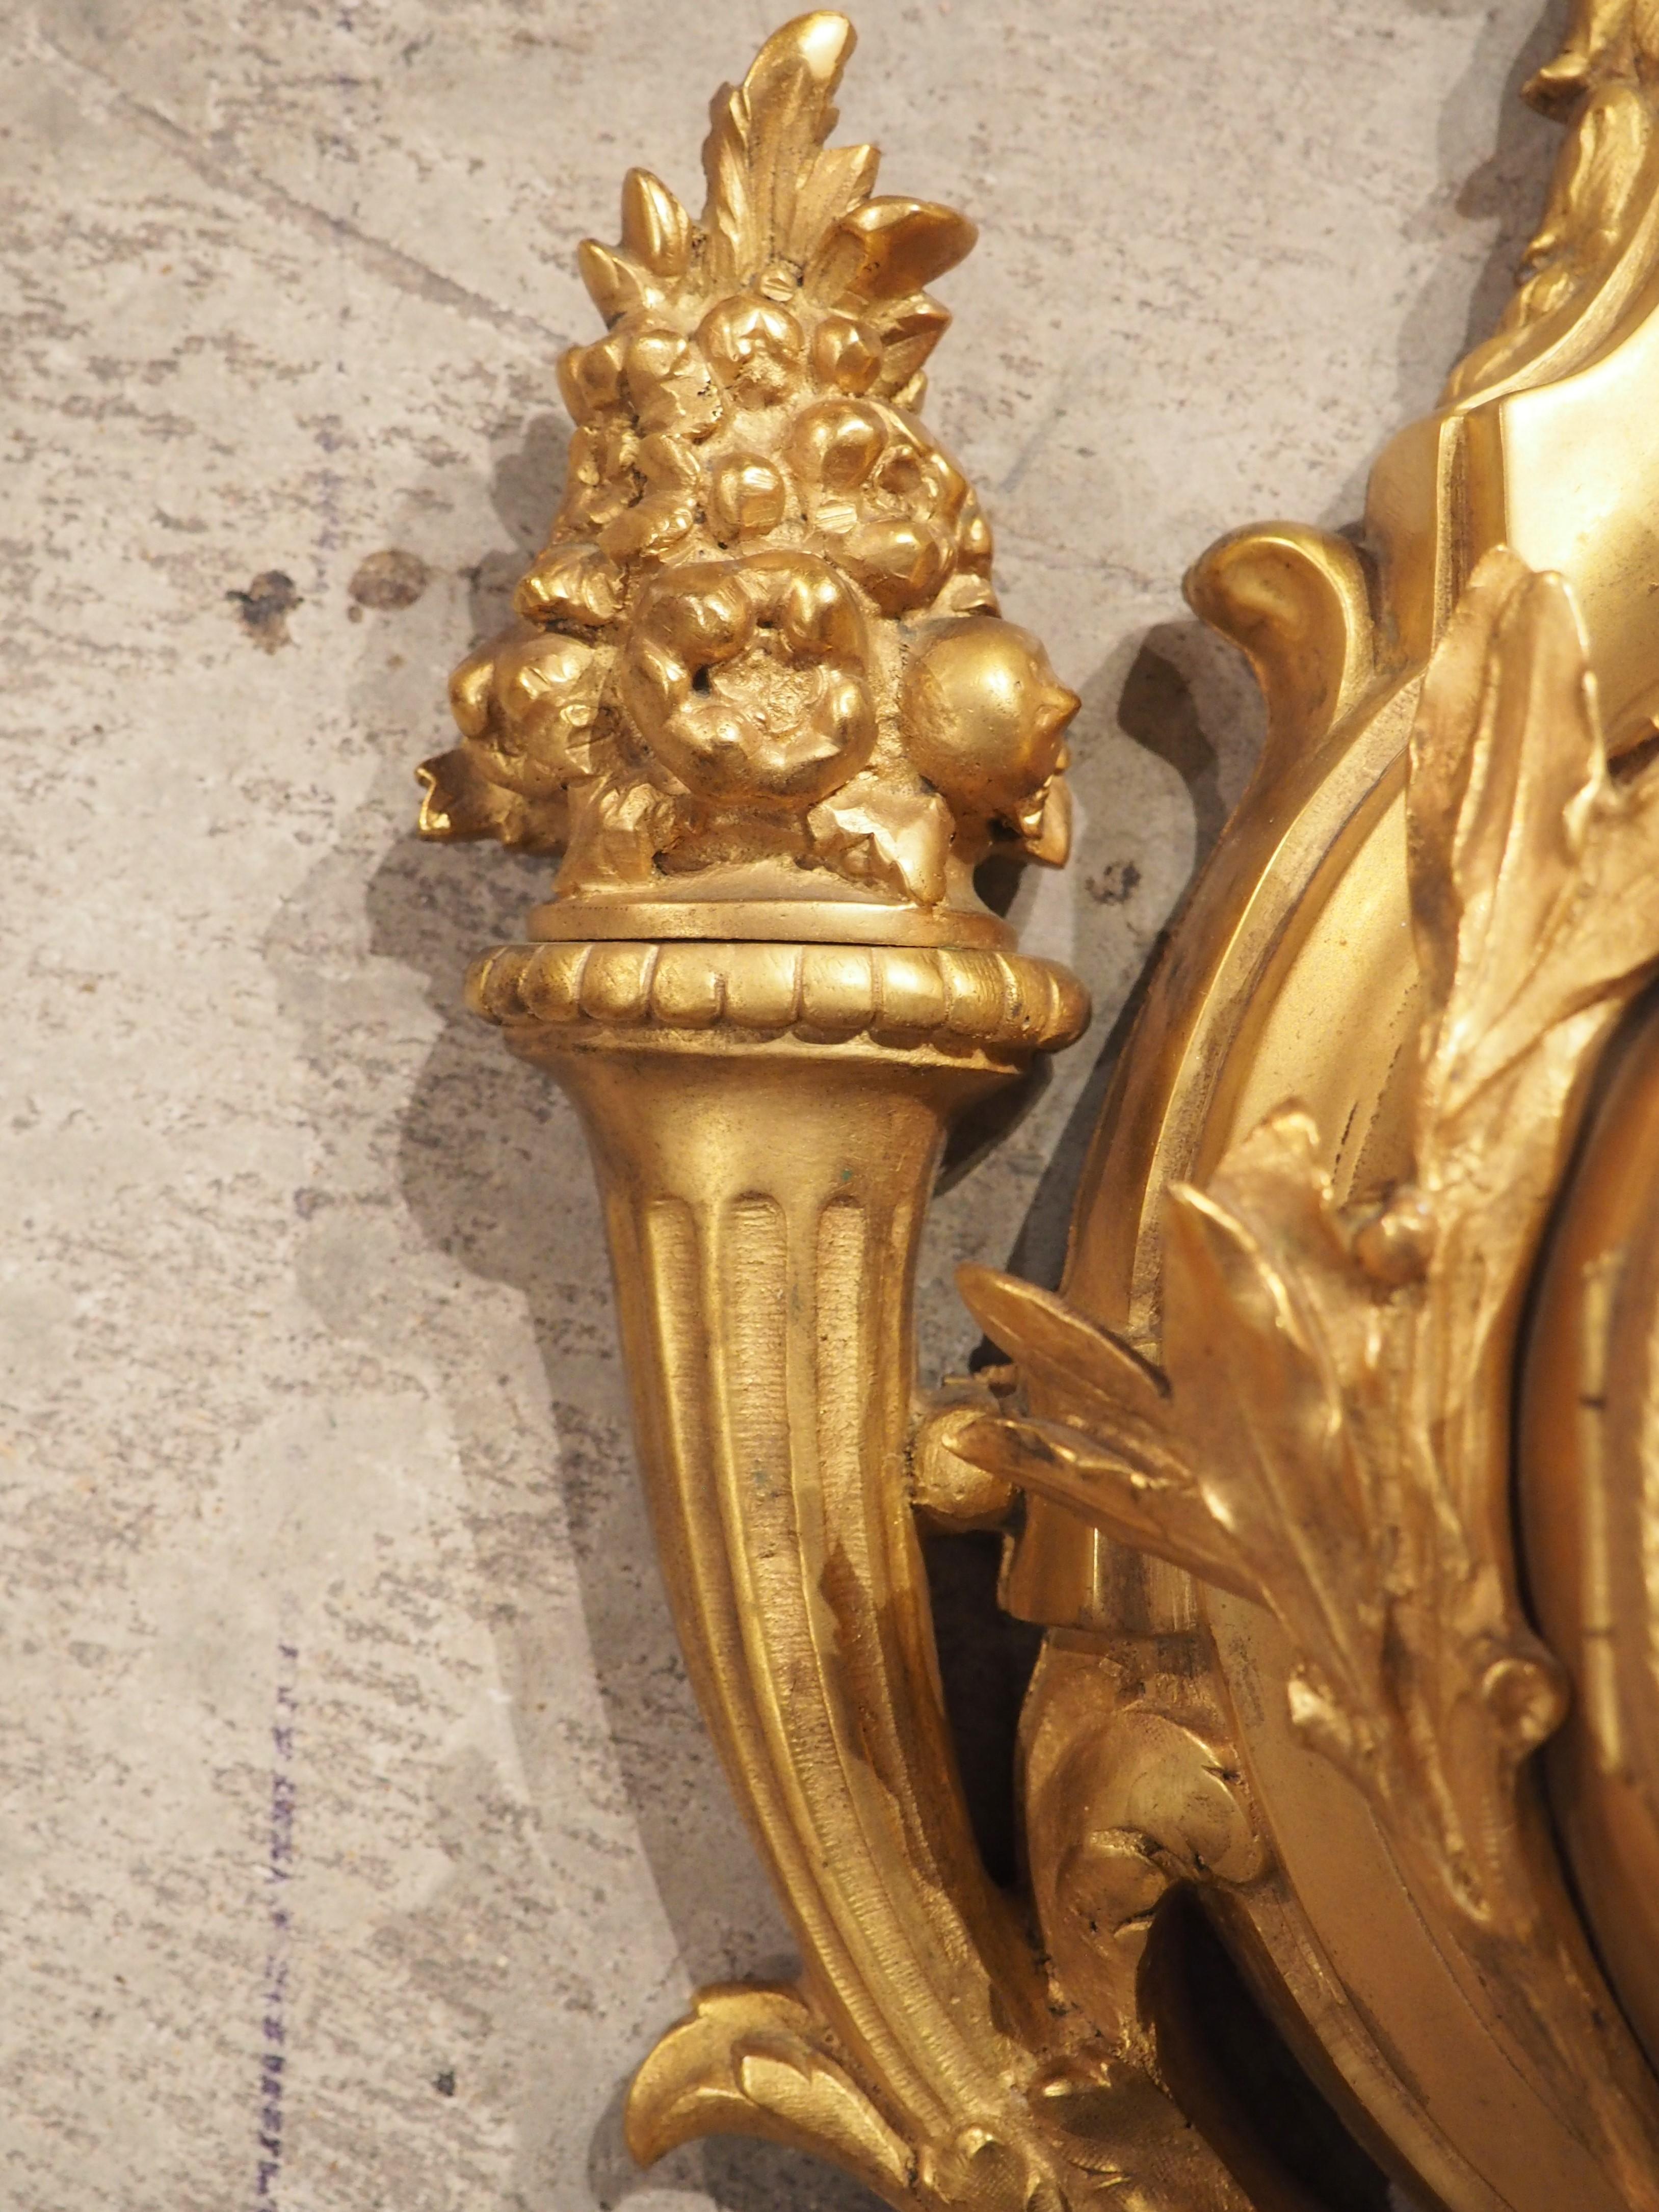 Fabriquée en France dans les années 1800, cette horloge murale en bronze doré de haute qualité présente des éléments de style Louis XVI. Le cadran blanc de l'horloge avec des chiffres bleus repose sur une plate-forme surélevée entourée de feuilles